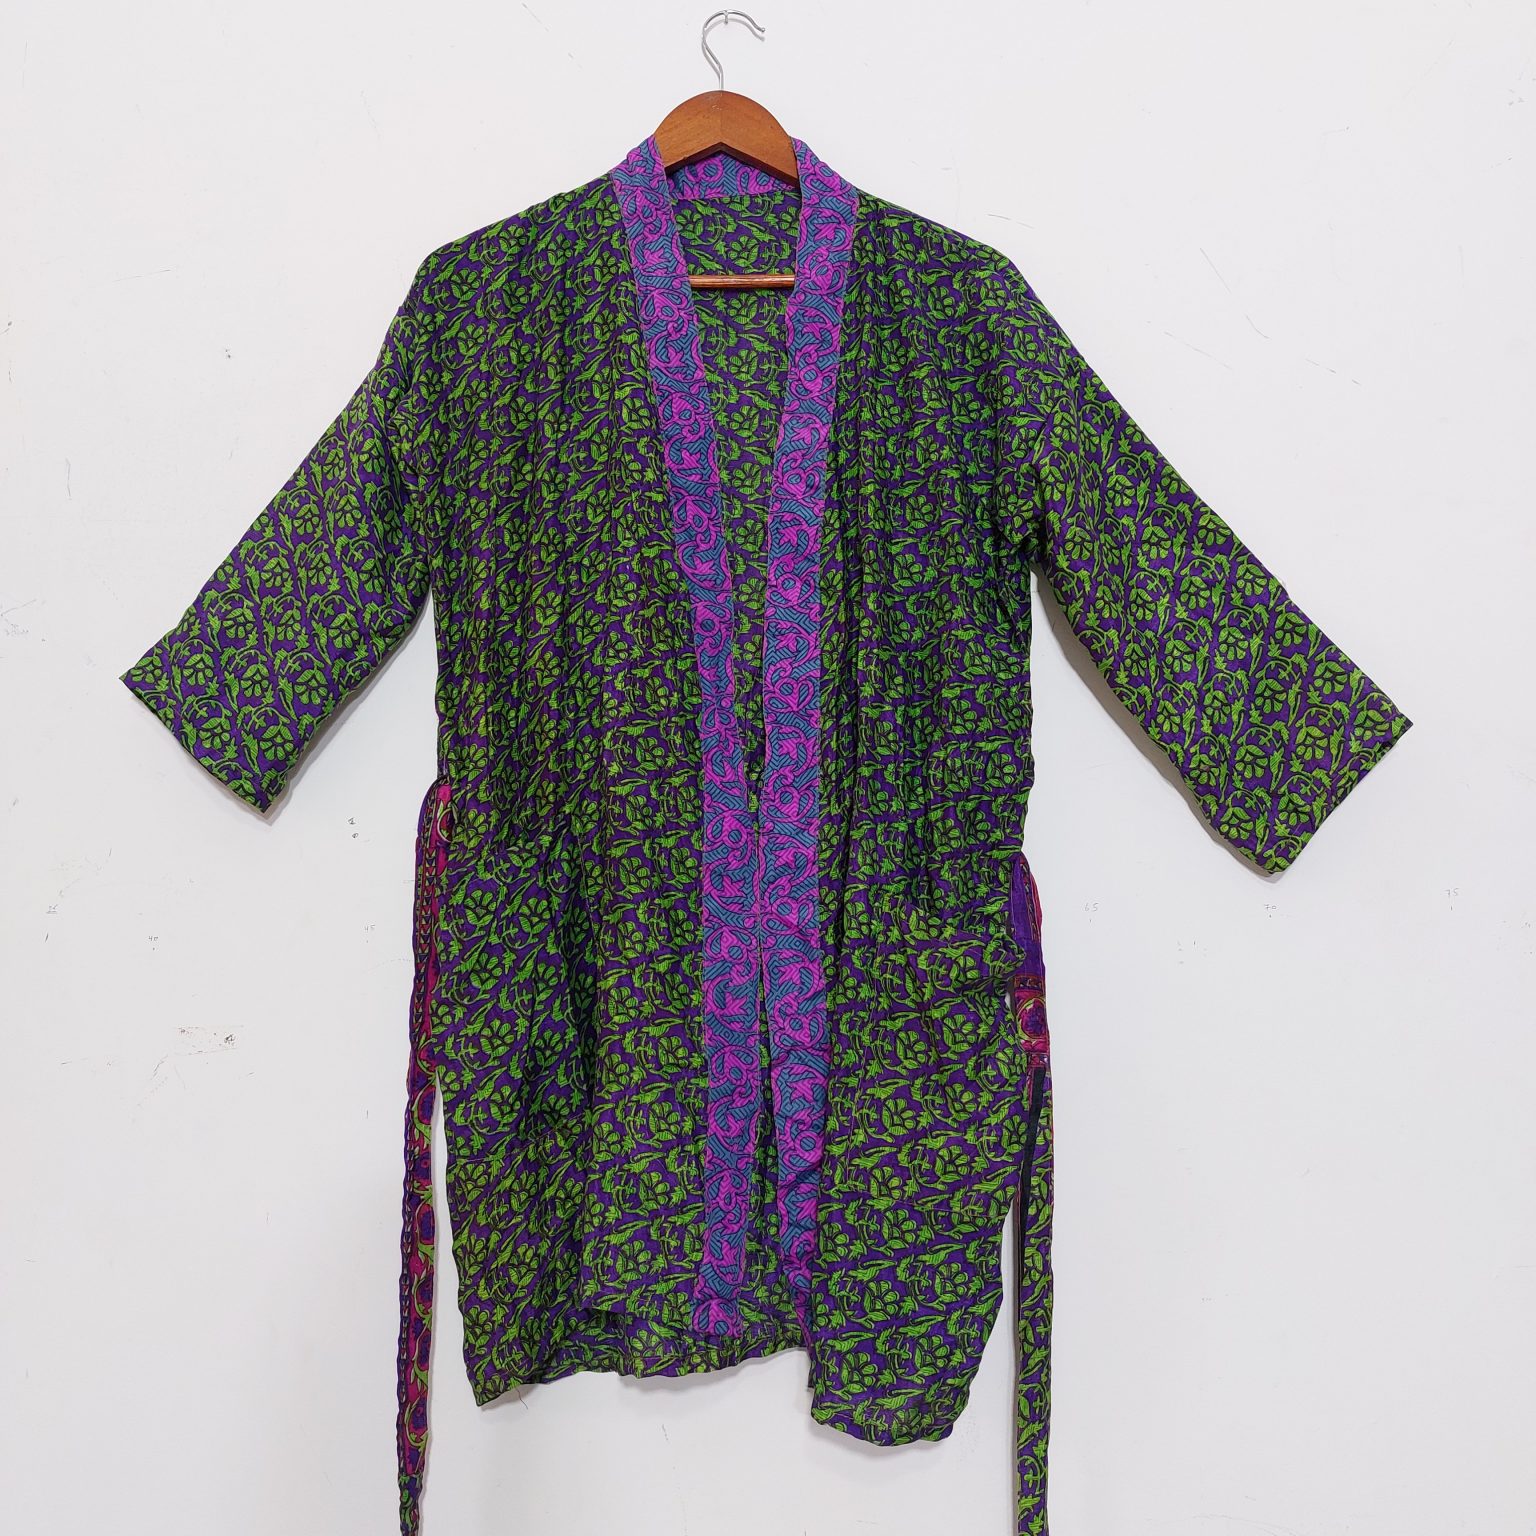 Kimonos | Silk and Cotton Sari Kimonos | Kantha Kimonos